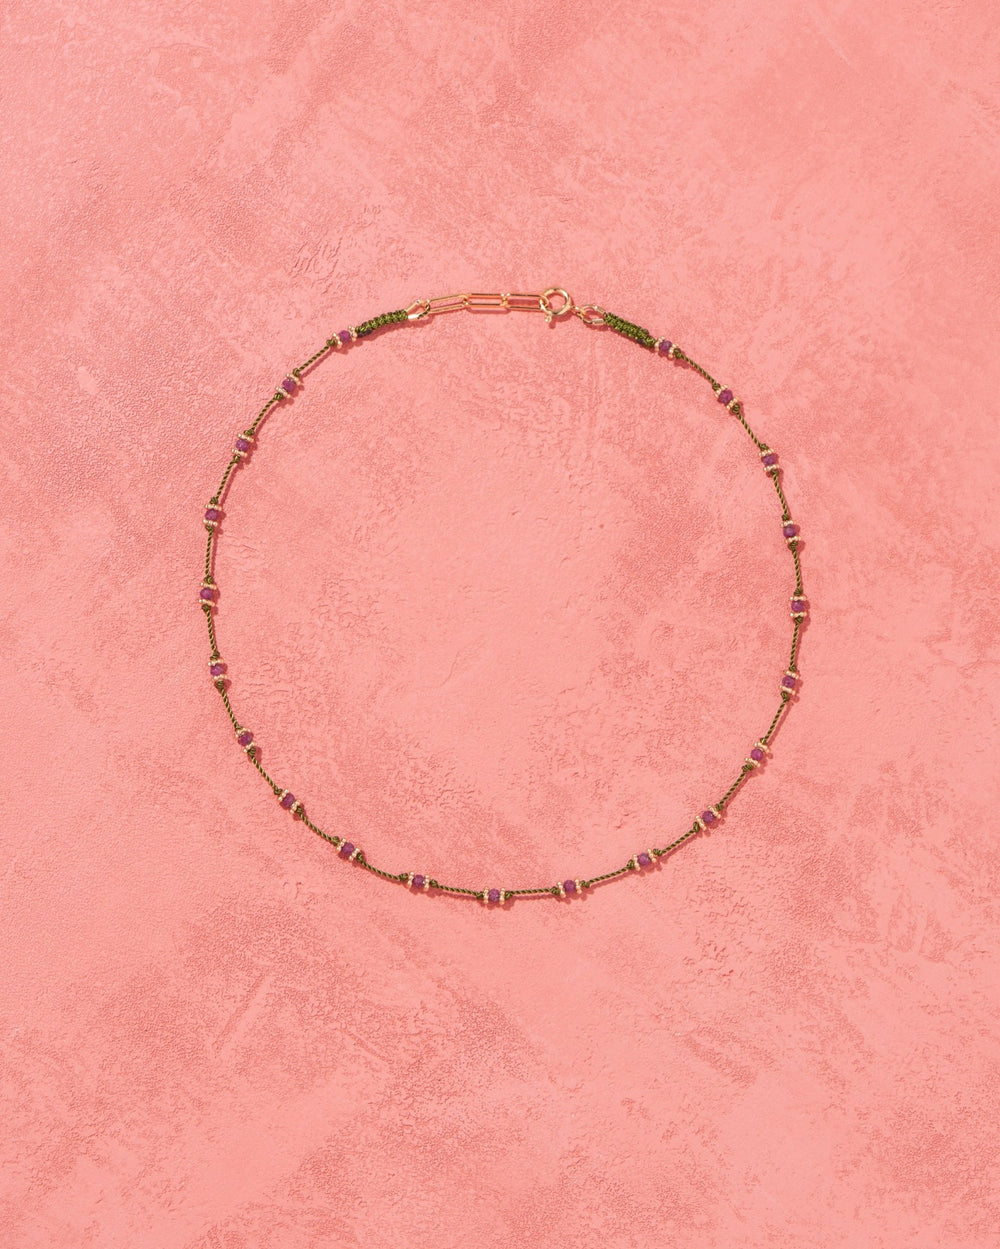 Tityaravy | Lotus Long Necklace - Micron/Vert/Rubis Rose